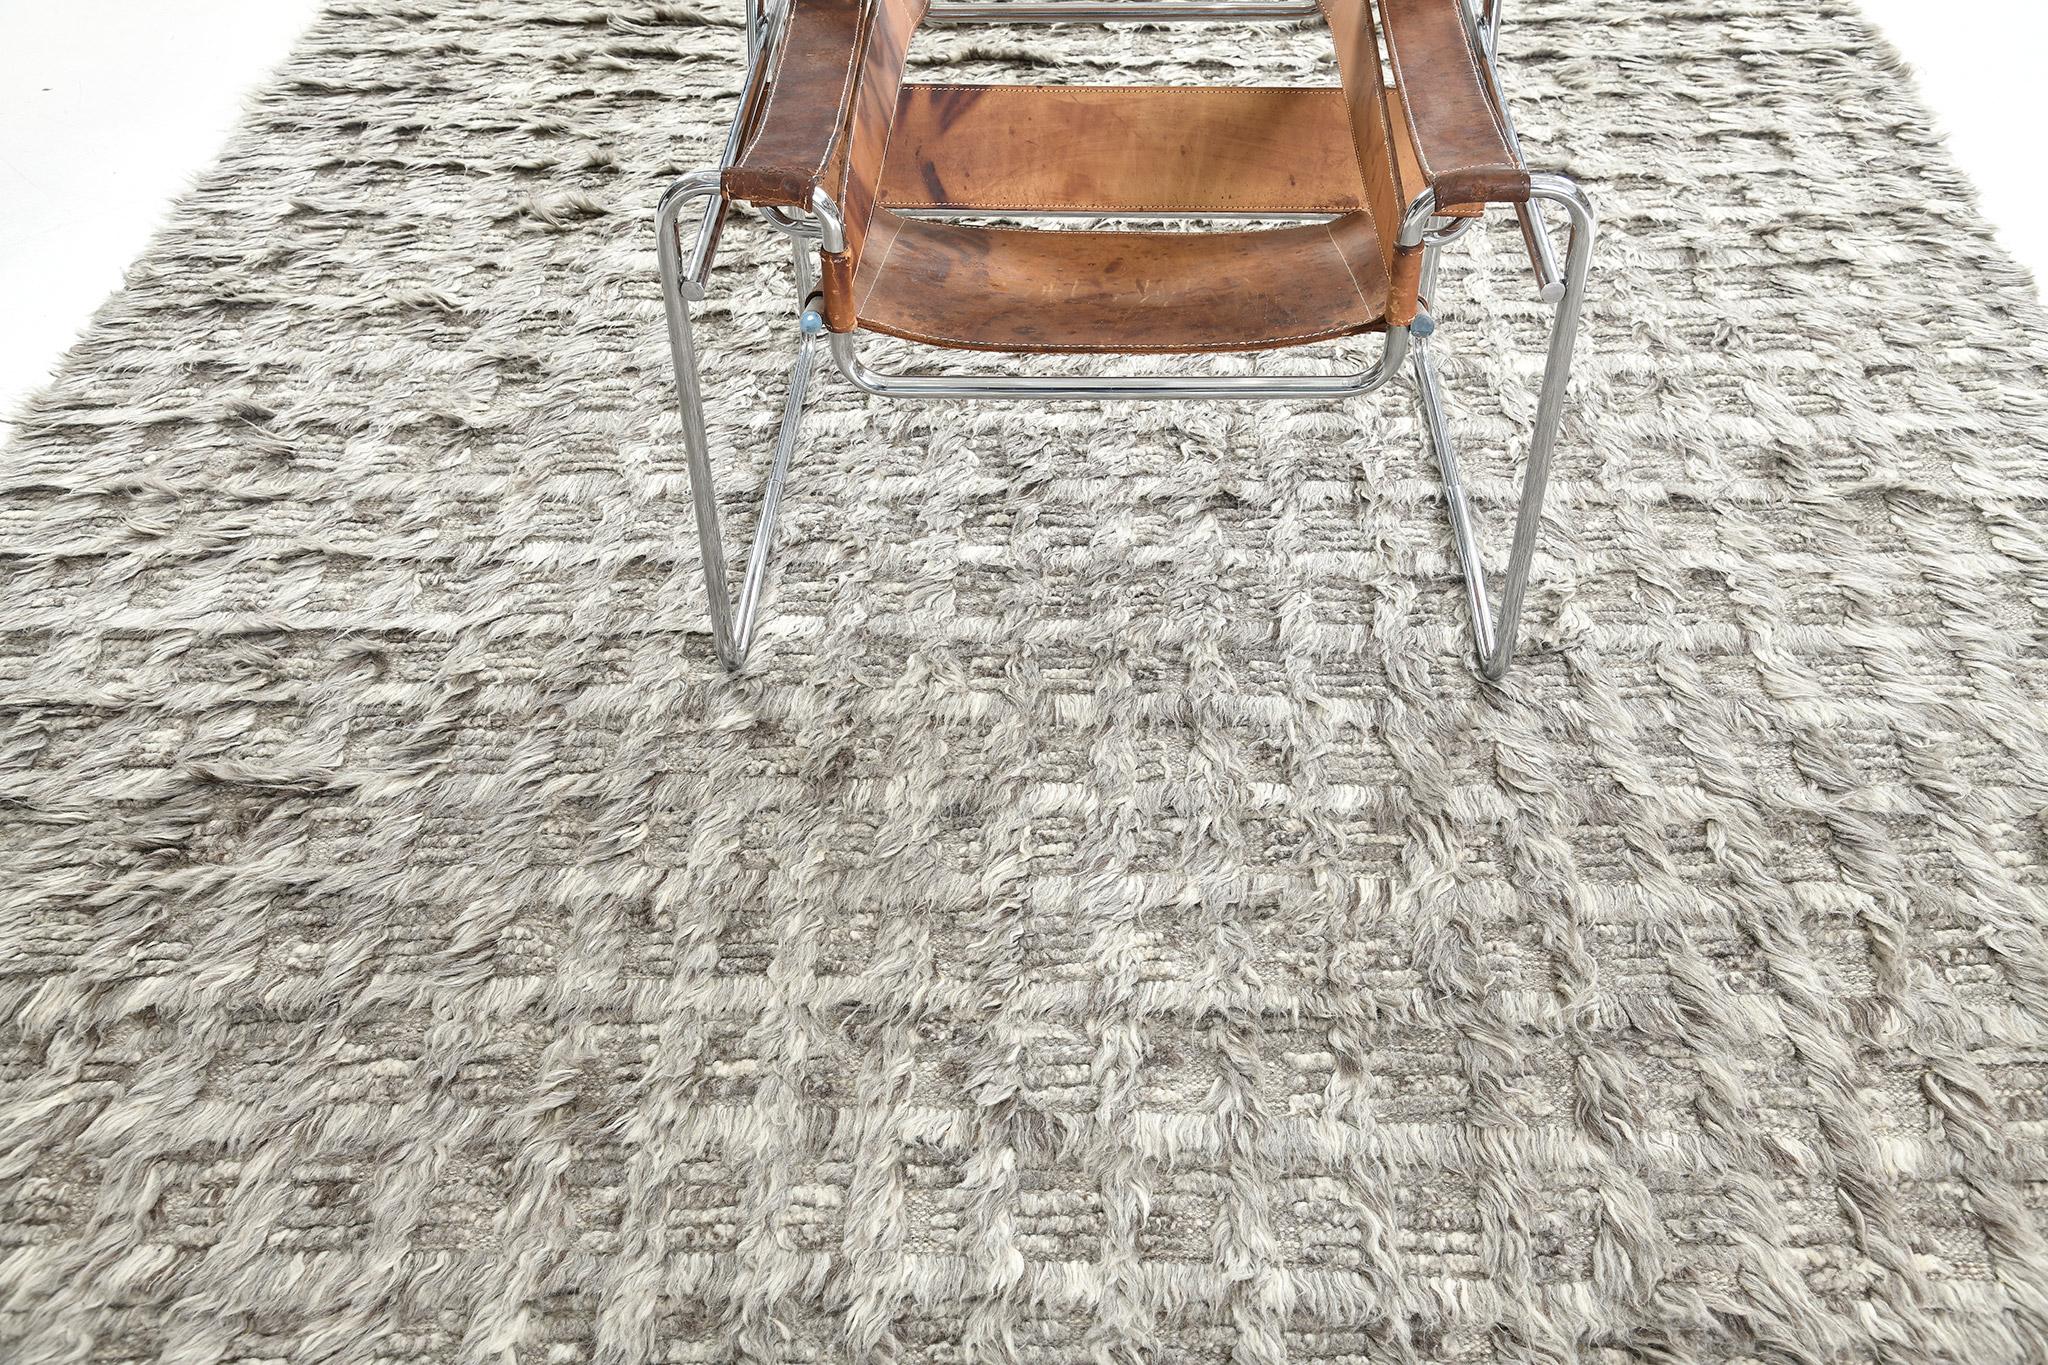 Der Teppich Mani ist ein monochromes Design, bei dem sich Lang- und Kurzflor mit offenem Flachgewebe abwechseln. Dieses Stück ist in kühlen Grautönen gehalten.

Die Sahara Collection'S ist eine Erweiterung des beliebten Amihan-Designs von Mehraban